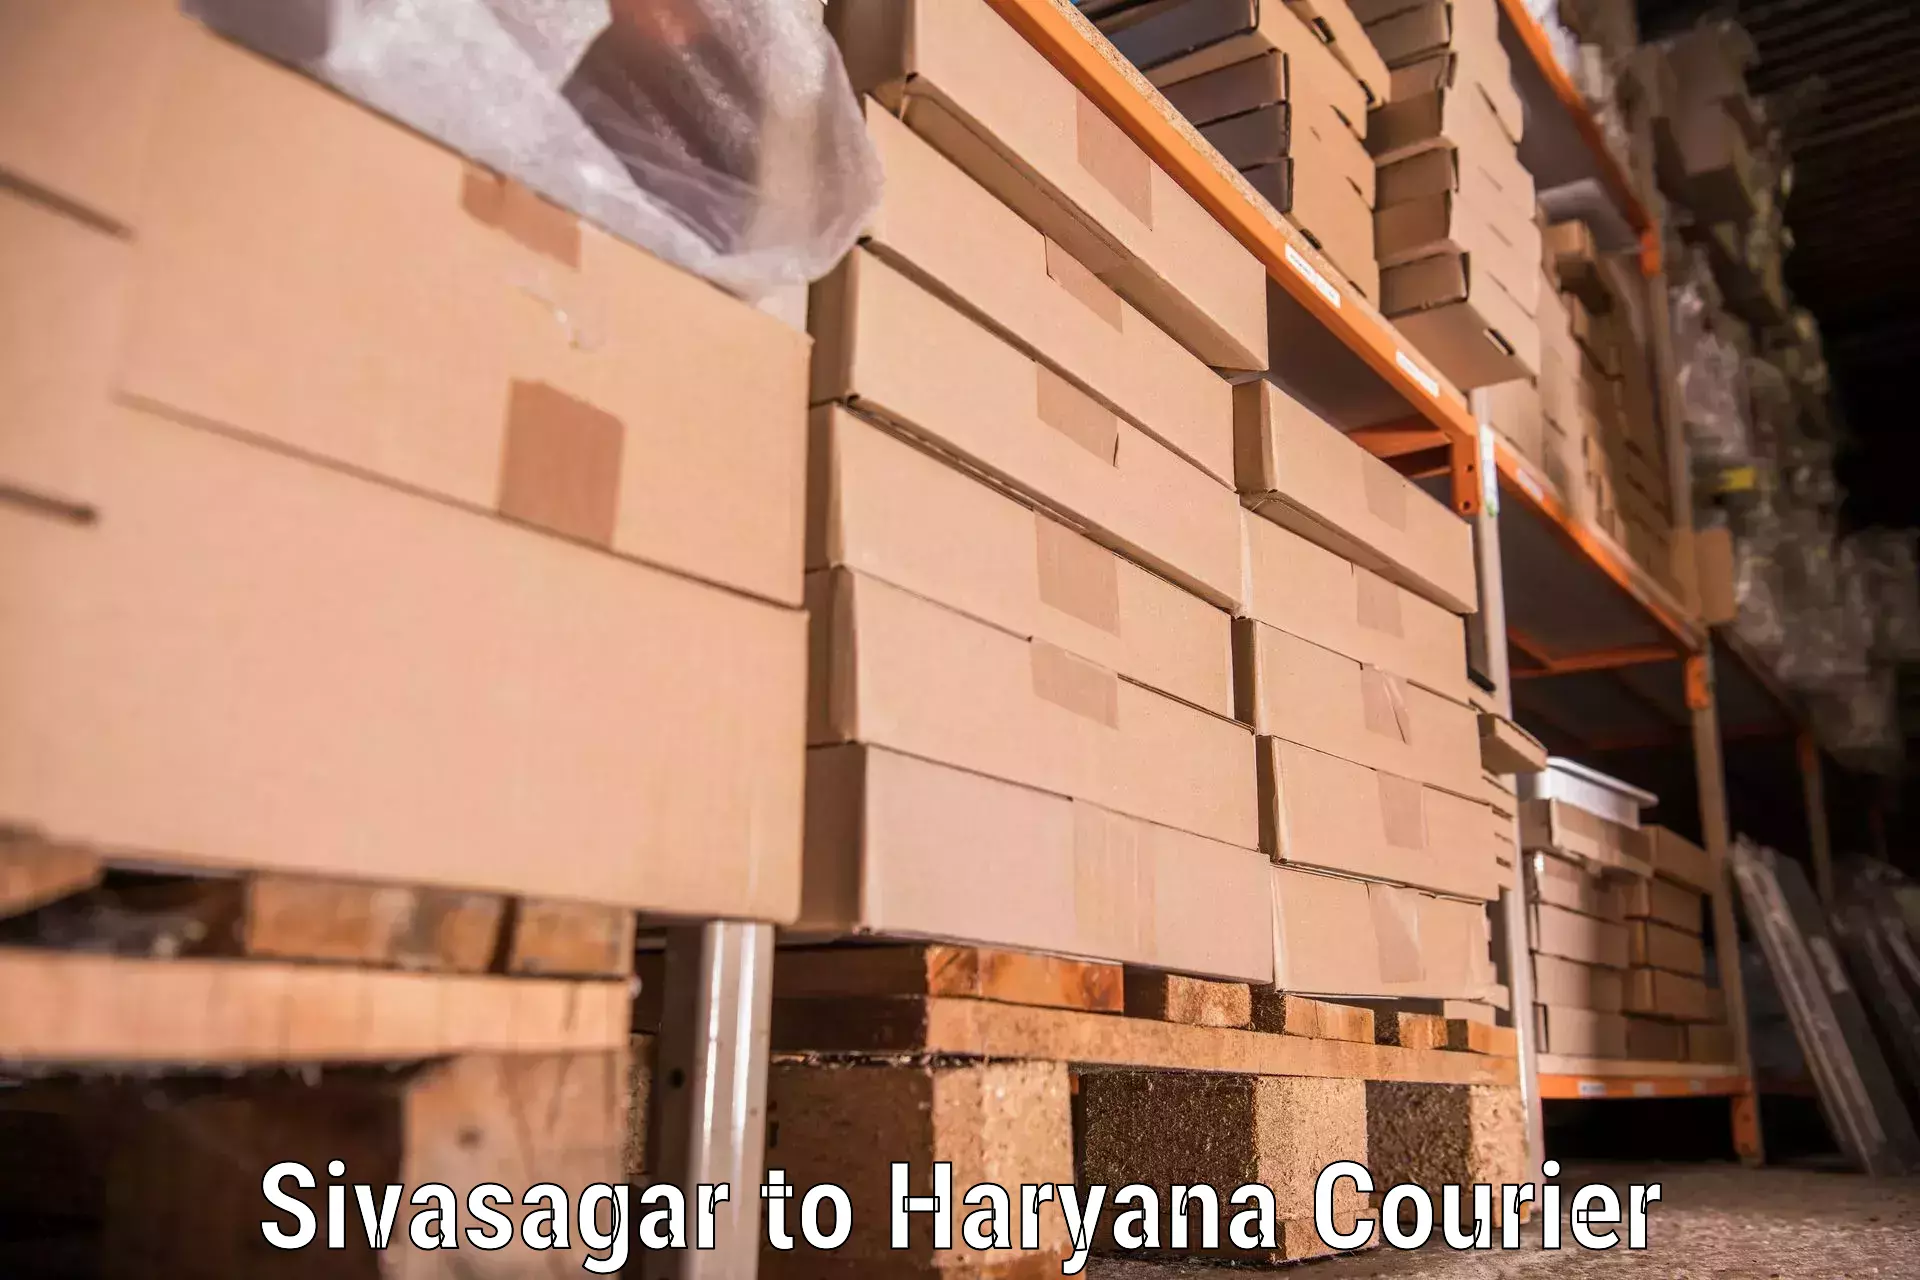 Furniture transport solutions Sivasagar to Ellenabad